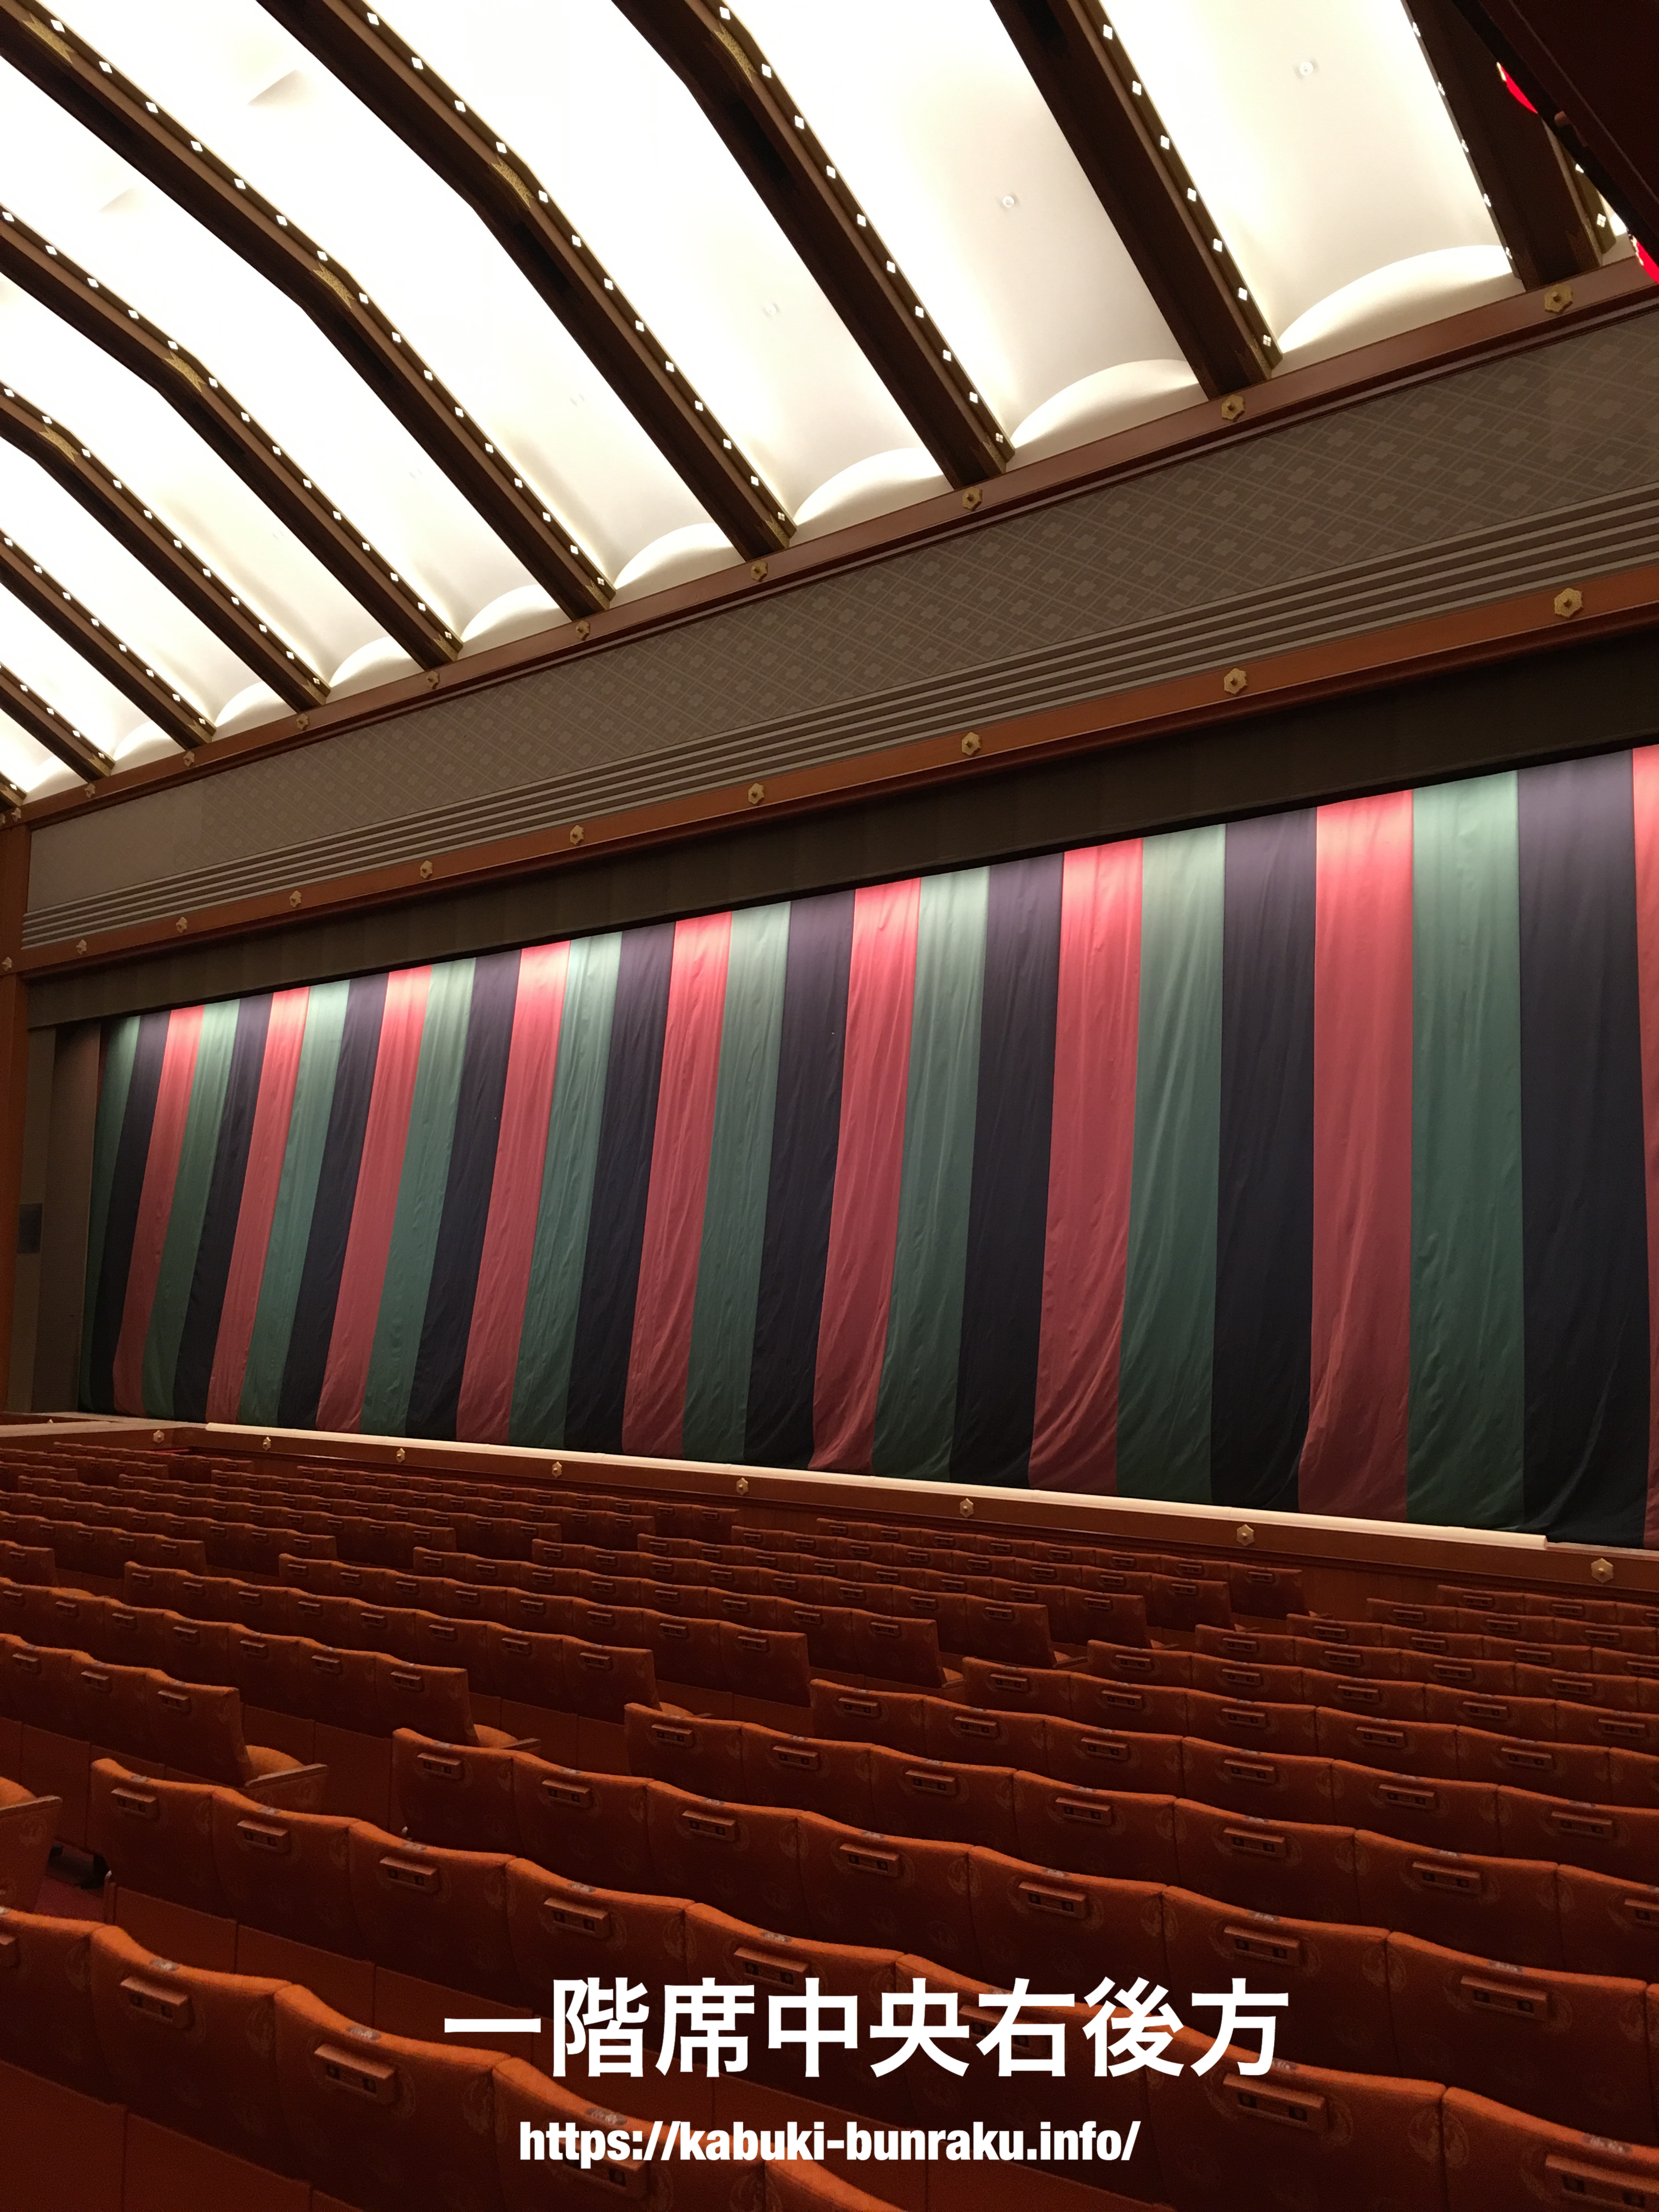 歌舞伎座１階席１等席/２等席からの舞台の見え方を写真で紹介